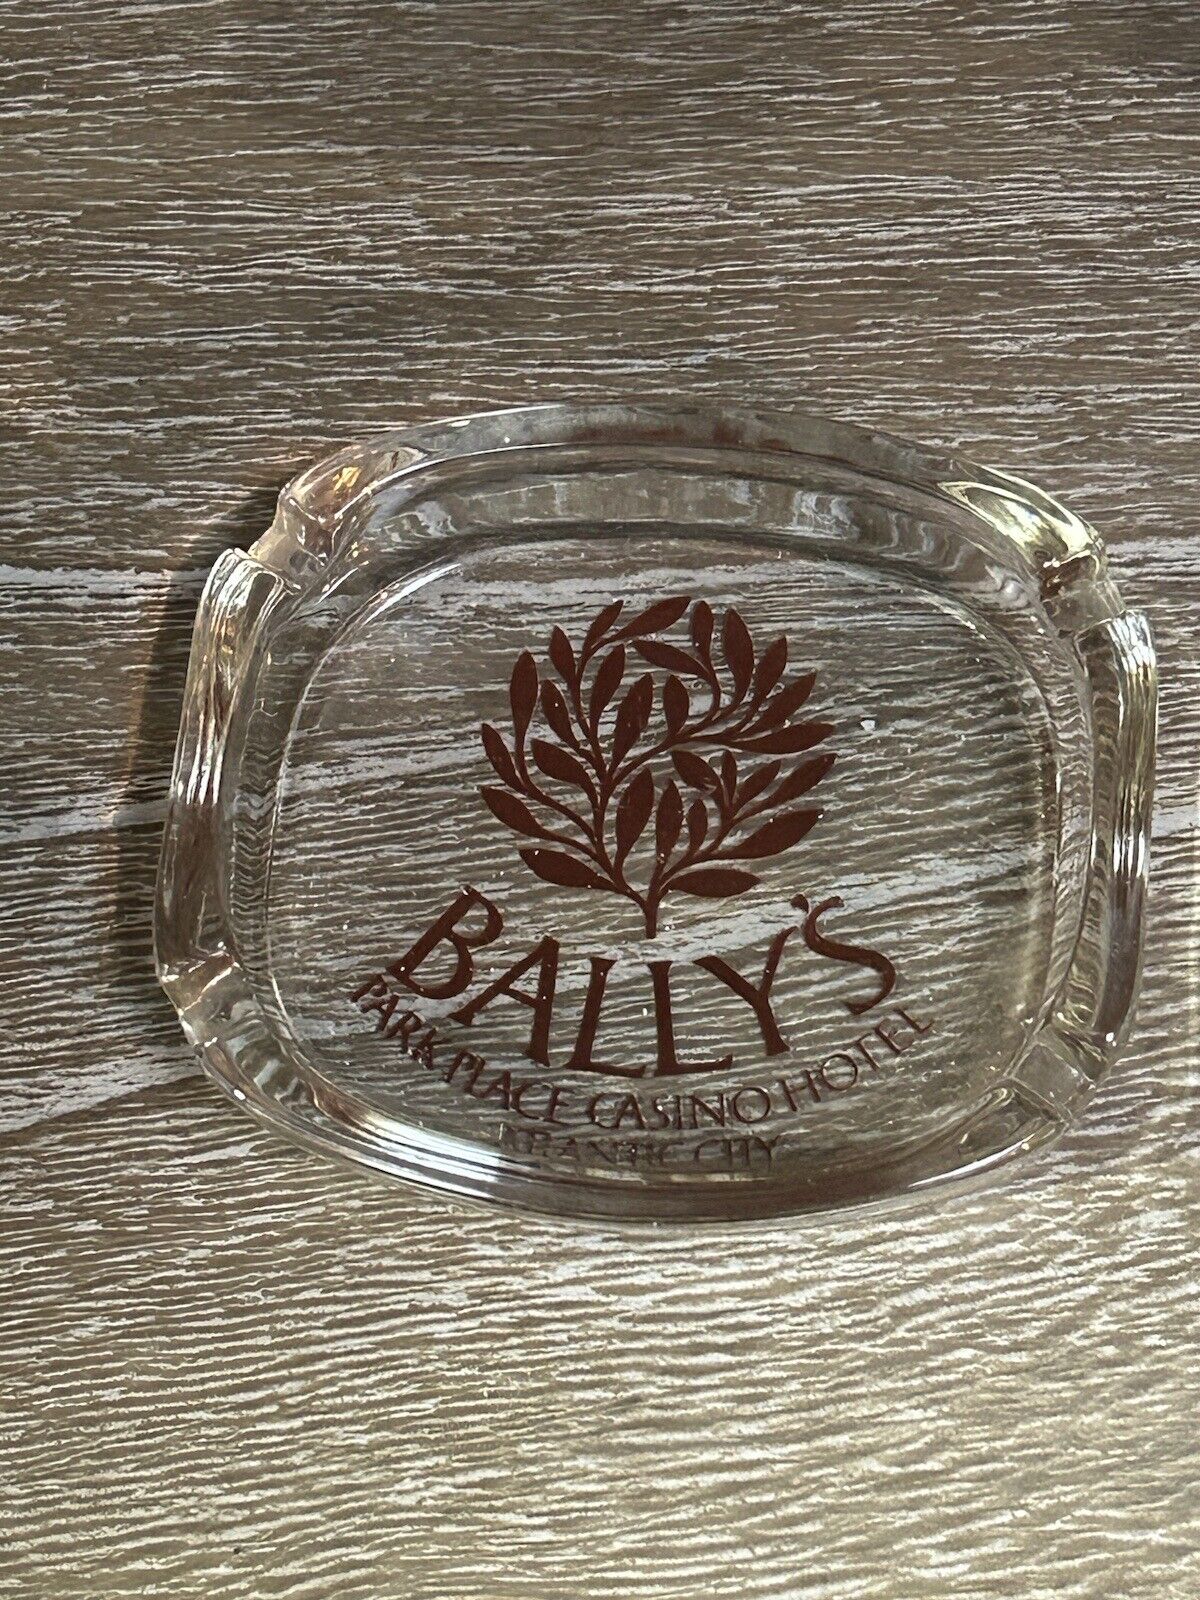 Vintage Bally's Casino Park Place Hotel Room Glass Ashtray Atlantic City